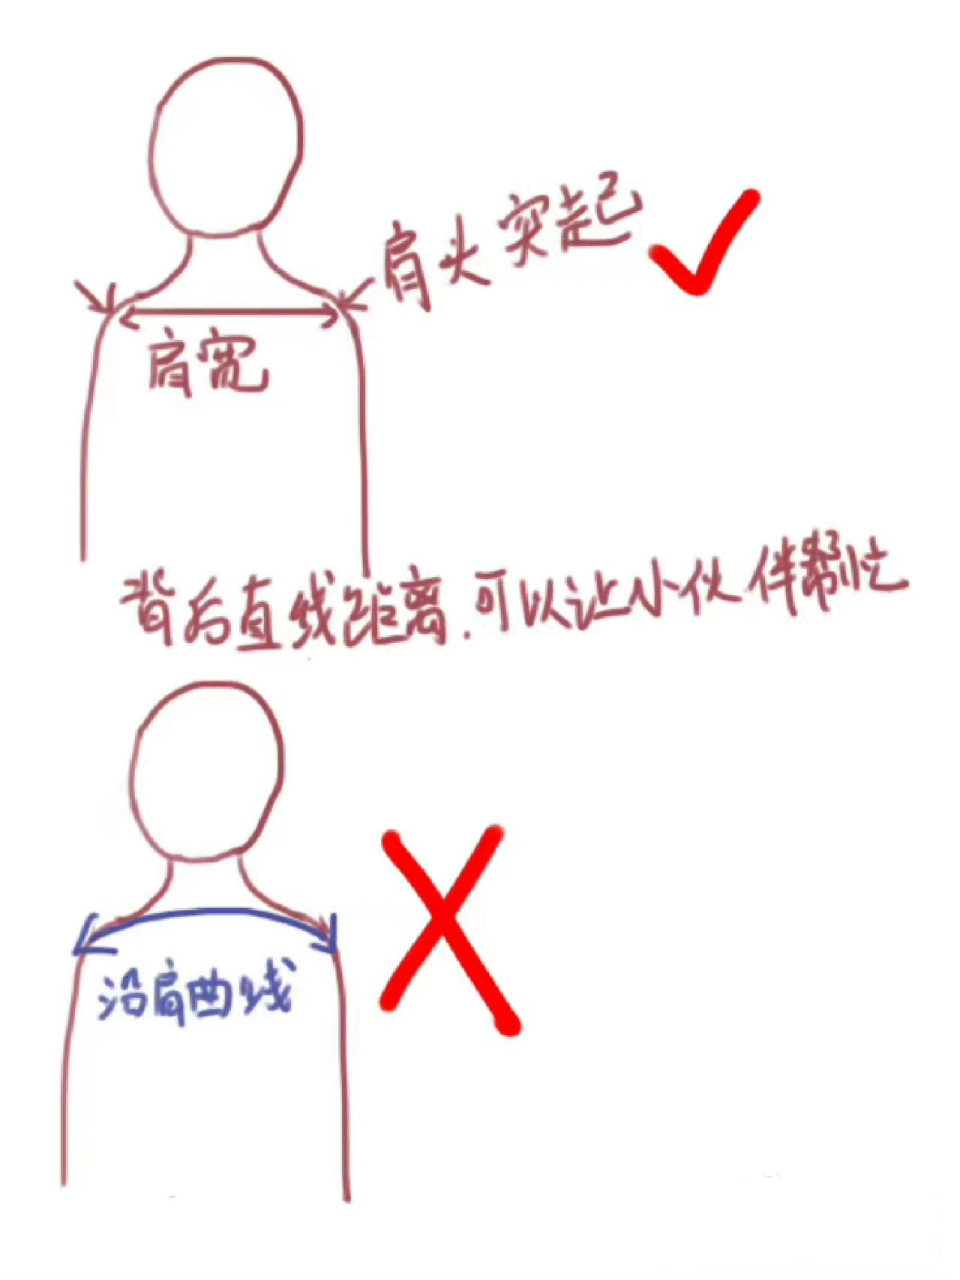 如何正确测量肩宽 如图所示,网购衣服的时候特别是选择一些衬衣西装的